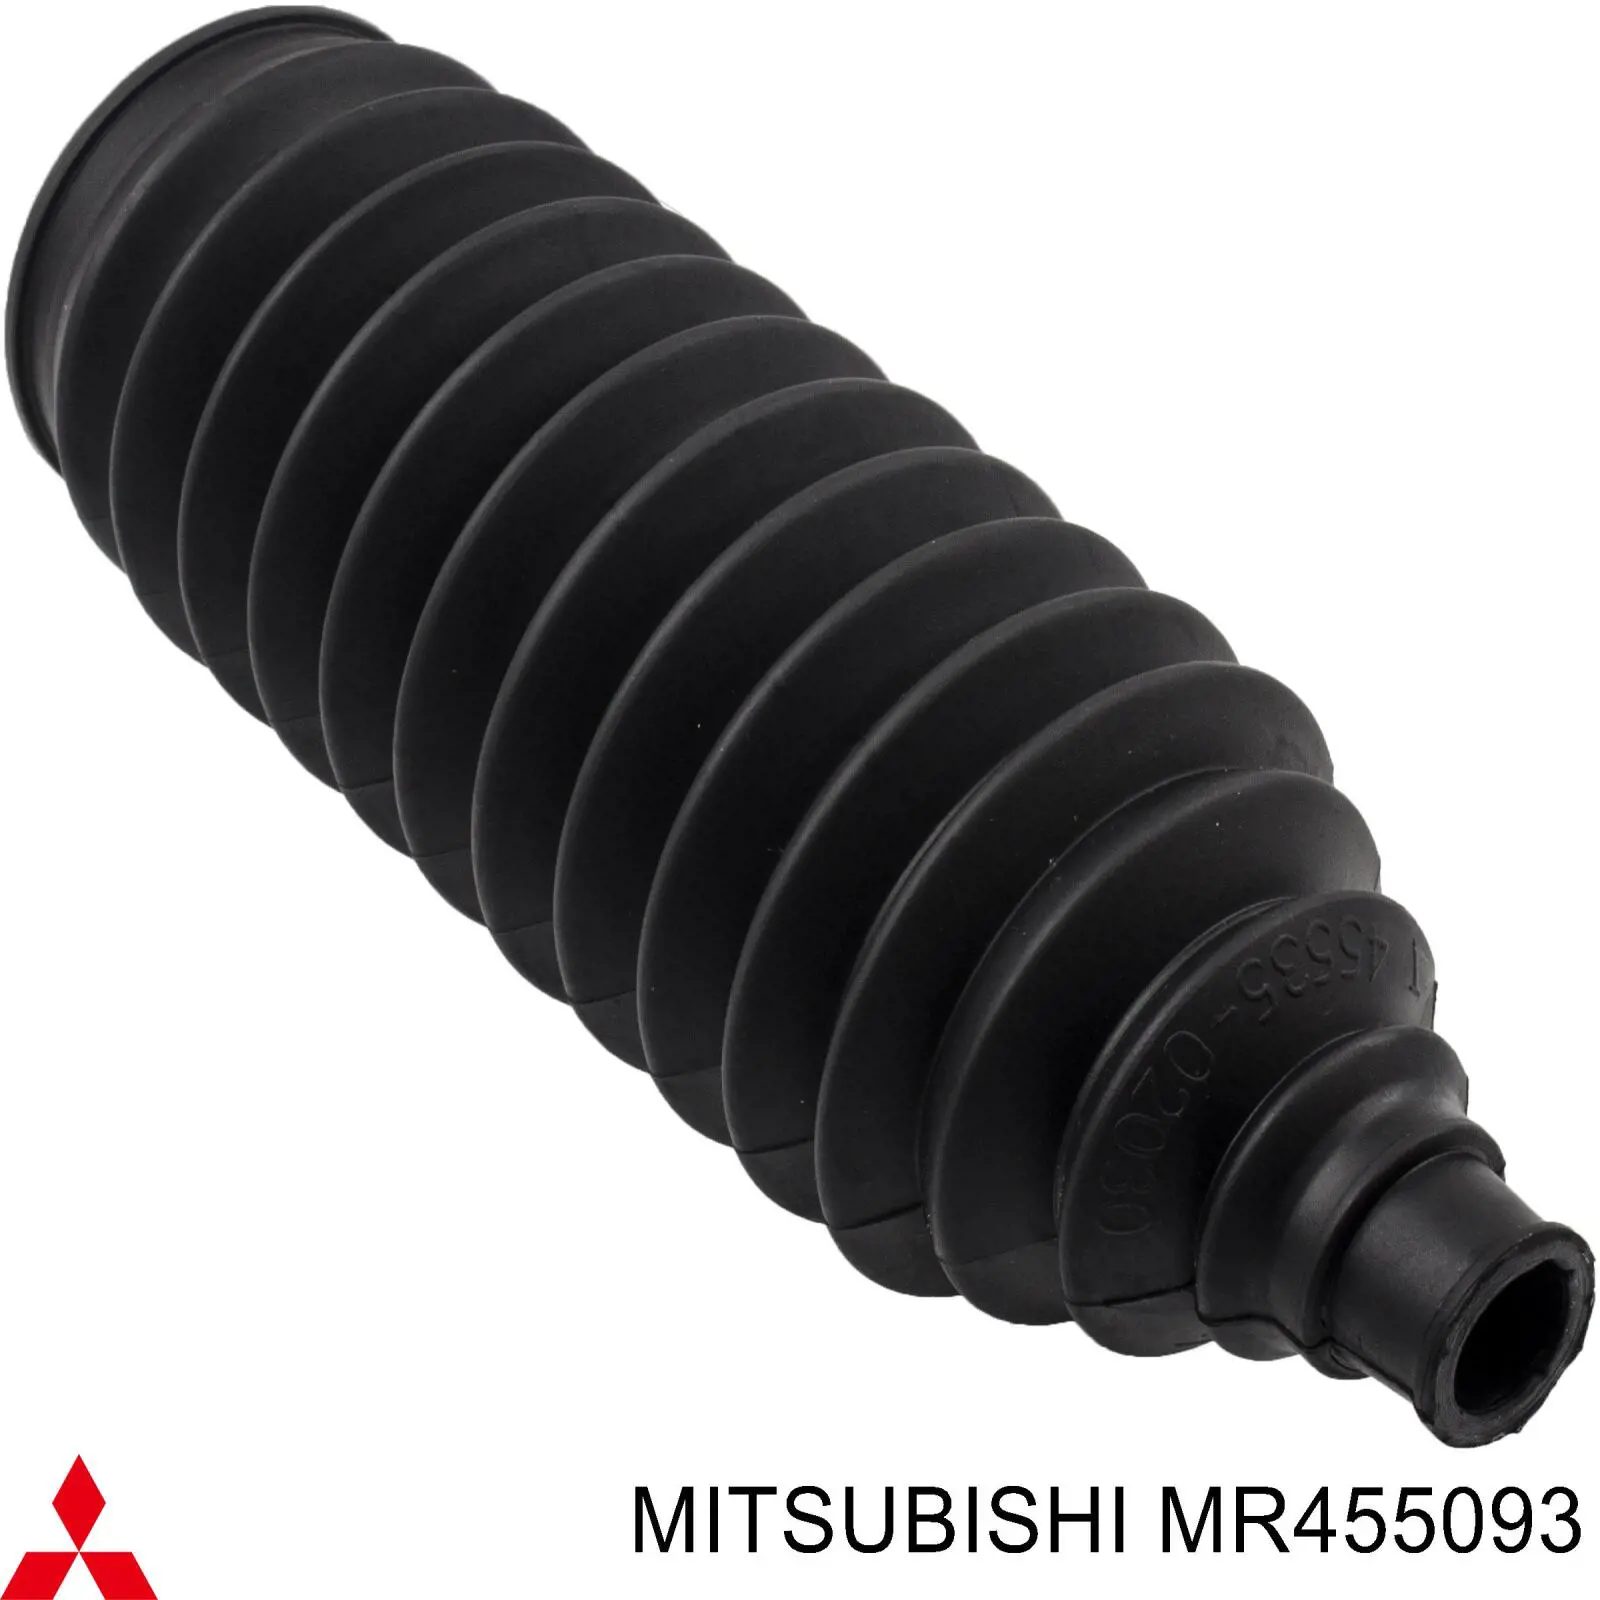 Пыльник рулевой MITSUBISHI MR455093